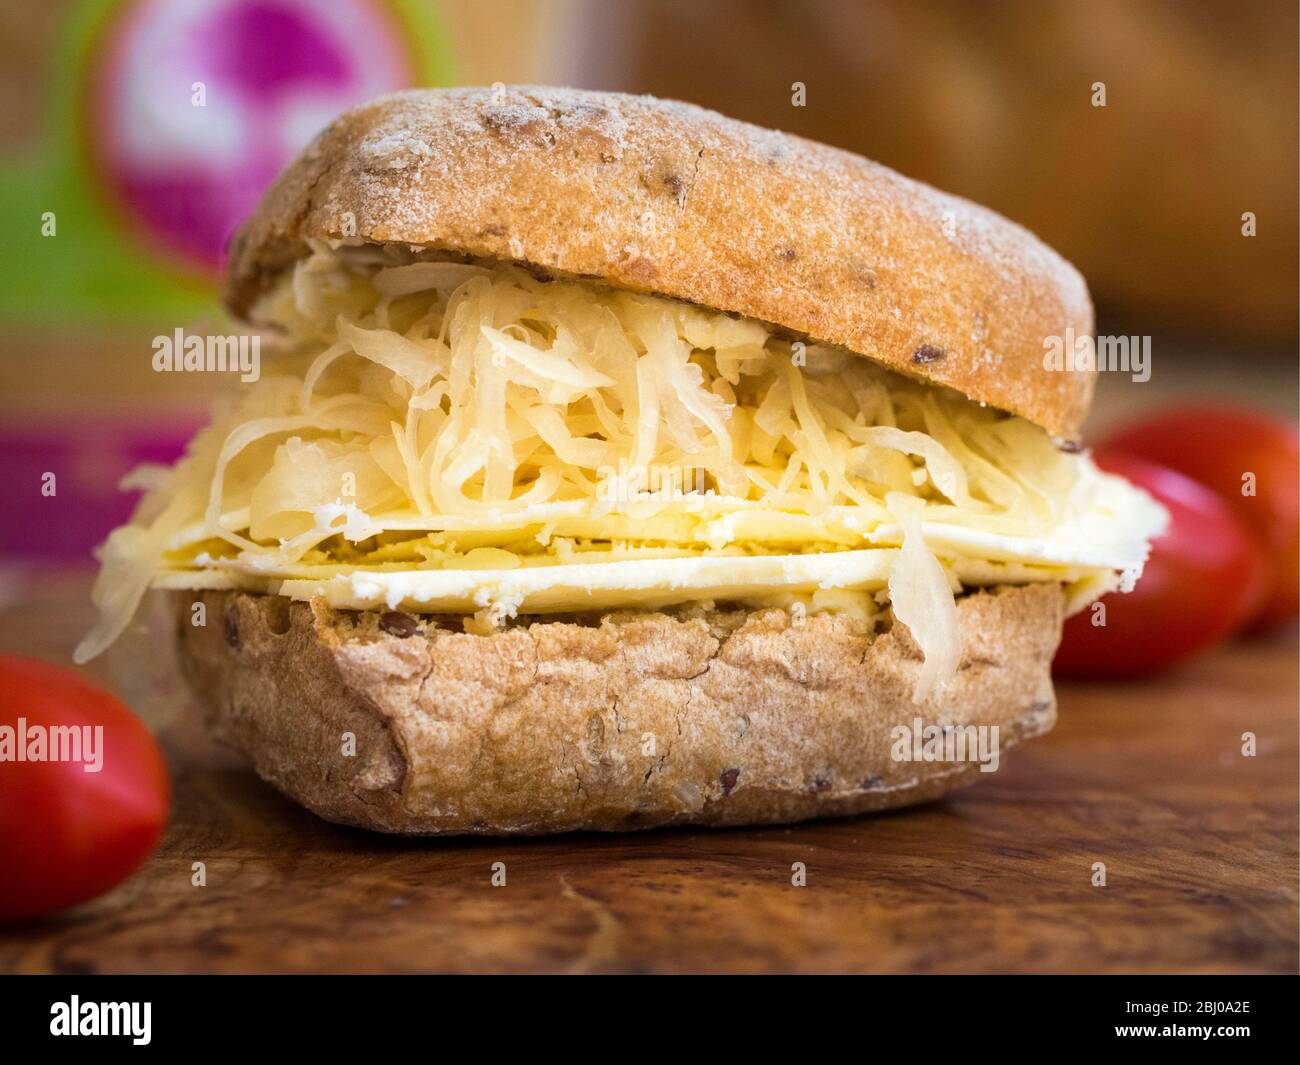 Nährendes Sandwich zum Mittagessen aus dünn geschnittenem Cheshire-Käse mit Sauerkraut auf braunem Ciabatta. (Glutenfreies Brot) Stockfoto